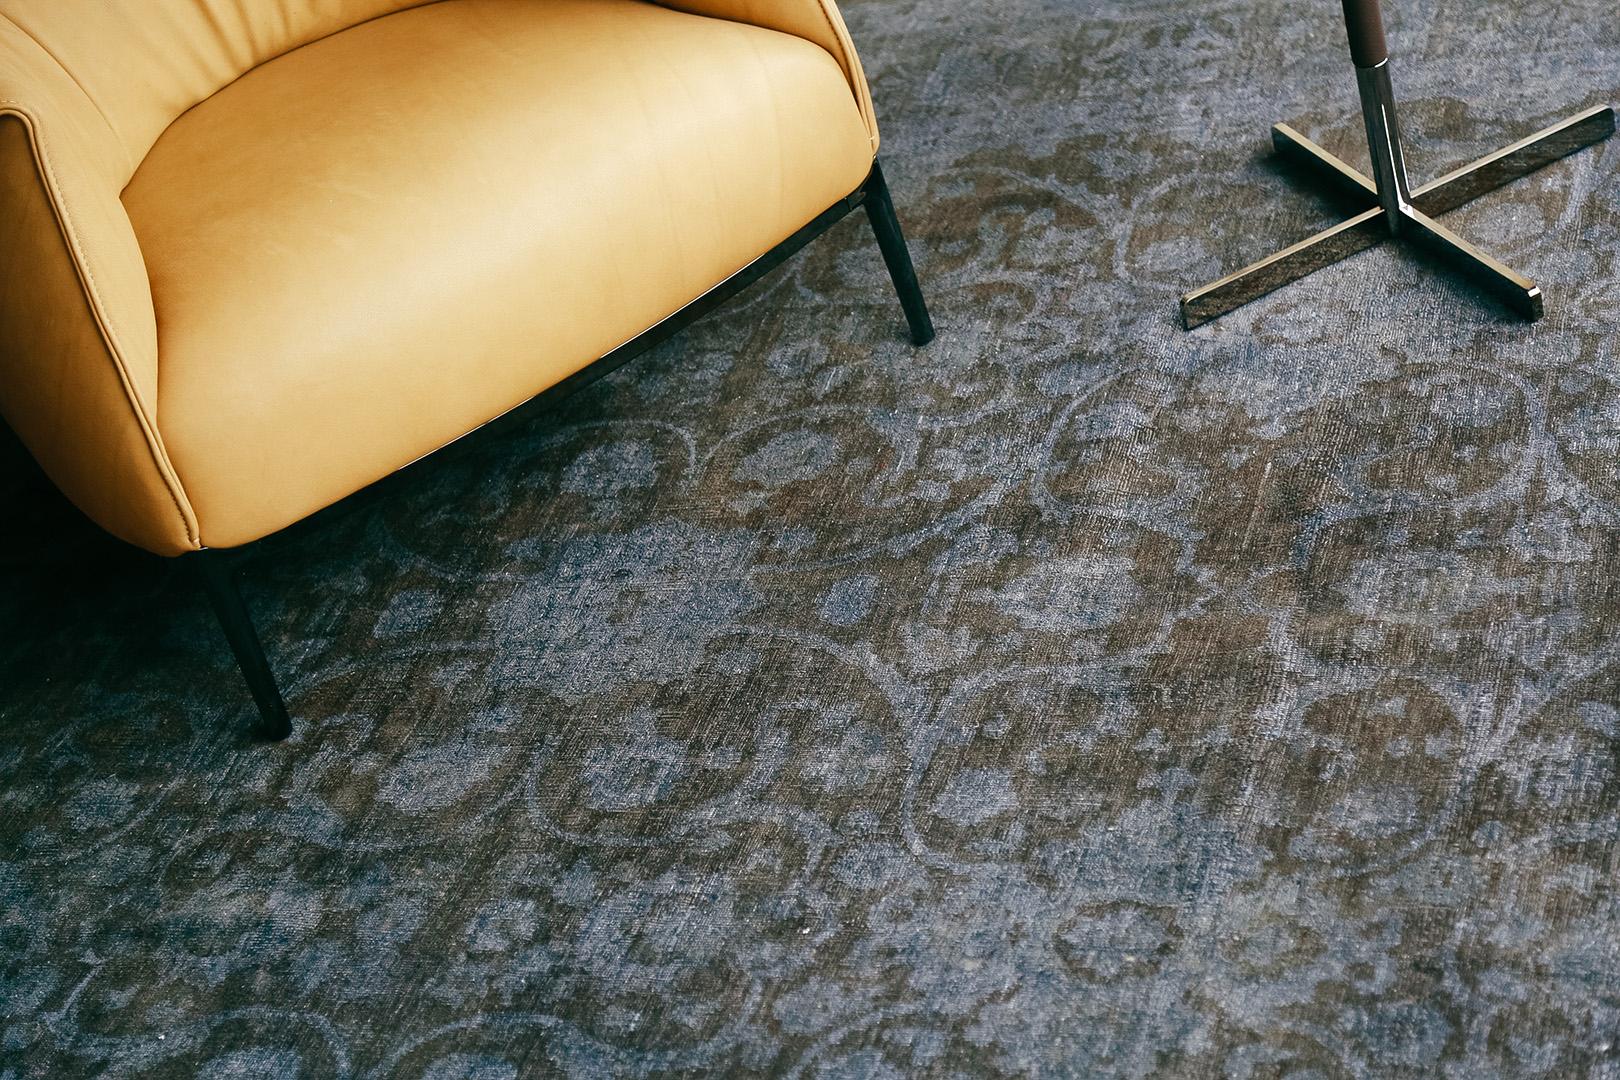 Gefärbte Teppiche sind ein hervorragender Ausgangspunkt für die Gestaltung eines Raumes. Aufgrund ihrer satten, leuchtenden Farbtöne erfreuen sich diese Teppiche zunehmender Beliebtheit. Sie setzen wunderbare, kraftvolle Akzente in einem